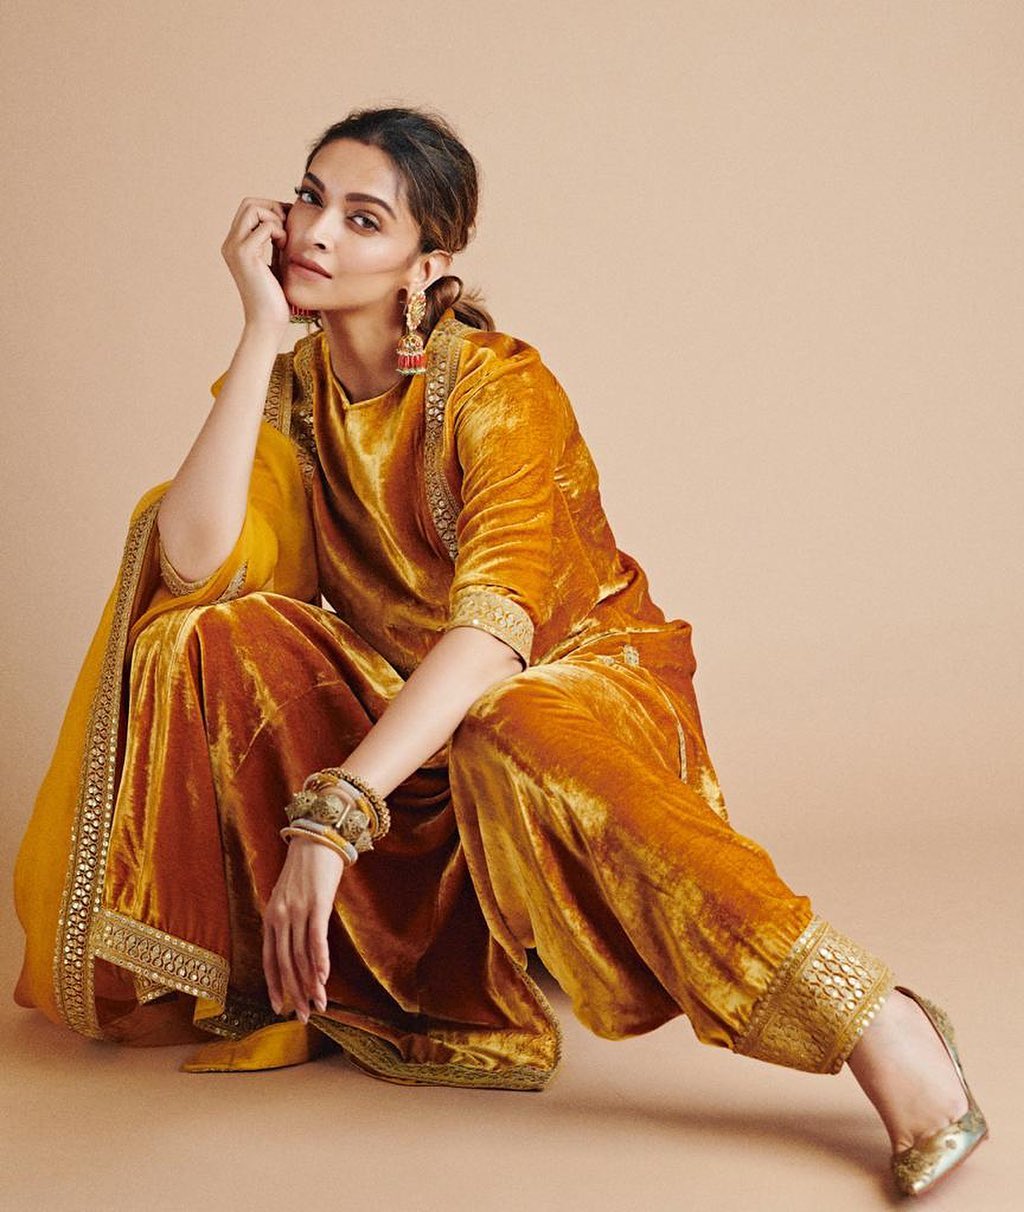 Deepika Padukone defines elegance in the mustard yellow suede suit